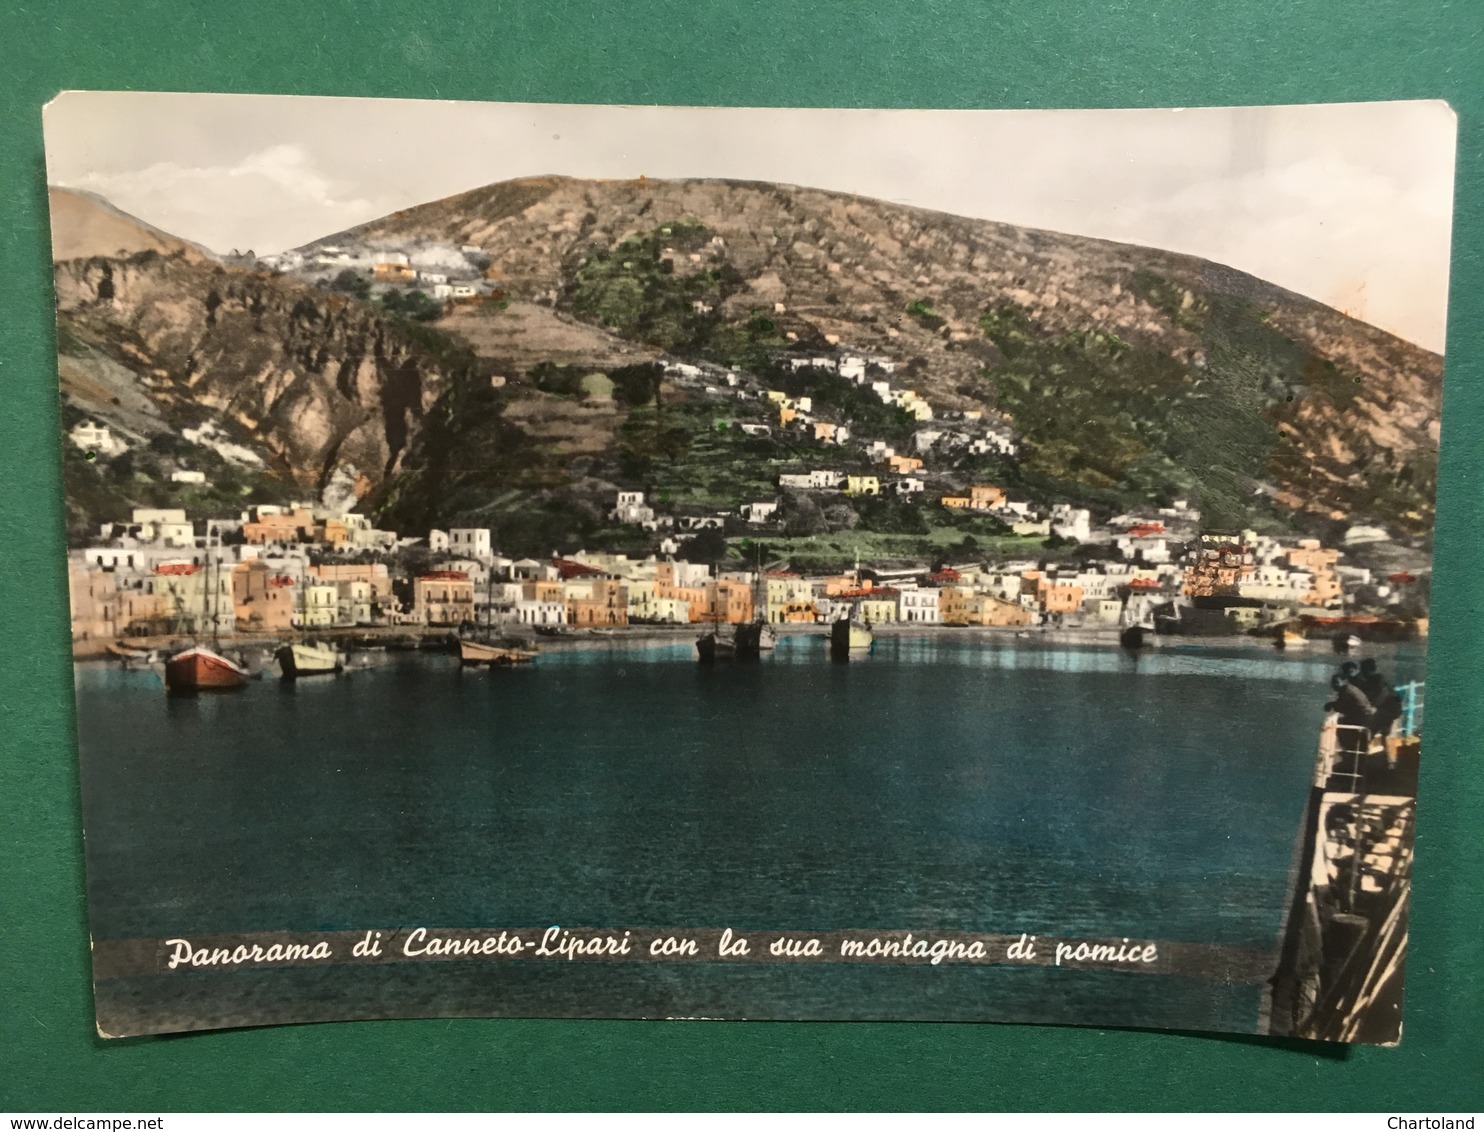 Cartolina Panorama Di Canneto Lipari - Con La Sua Montagna Di Pomice - 1954Ca. - Messina